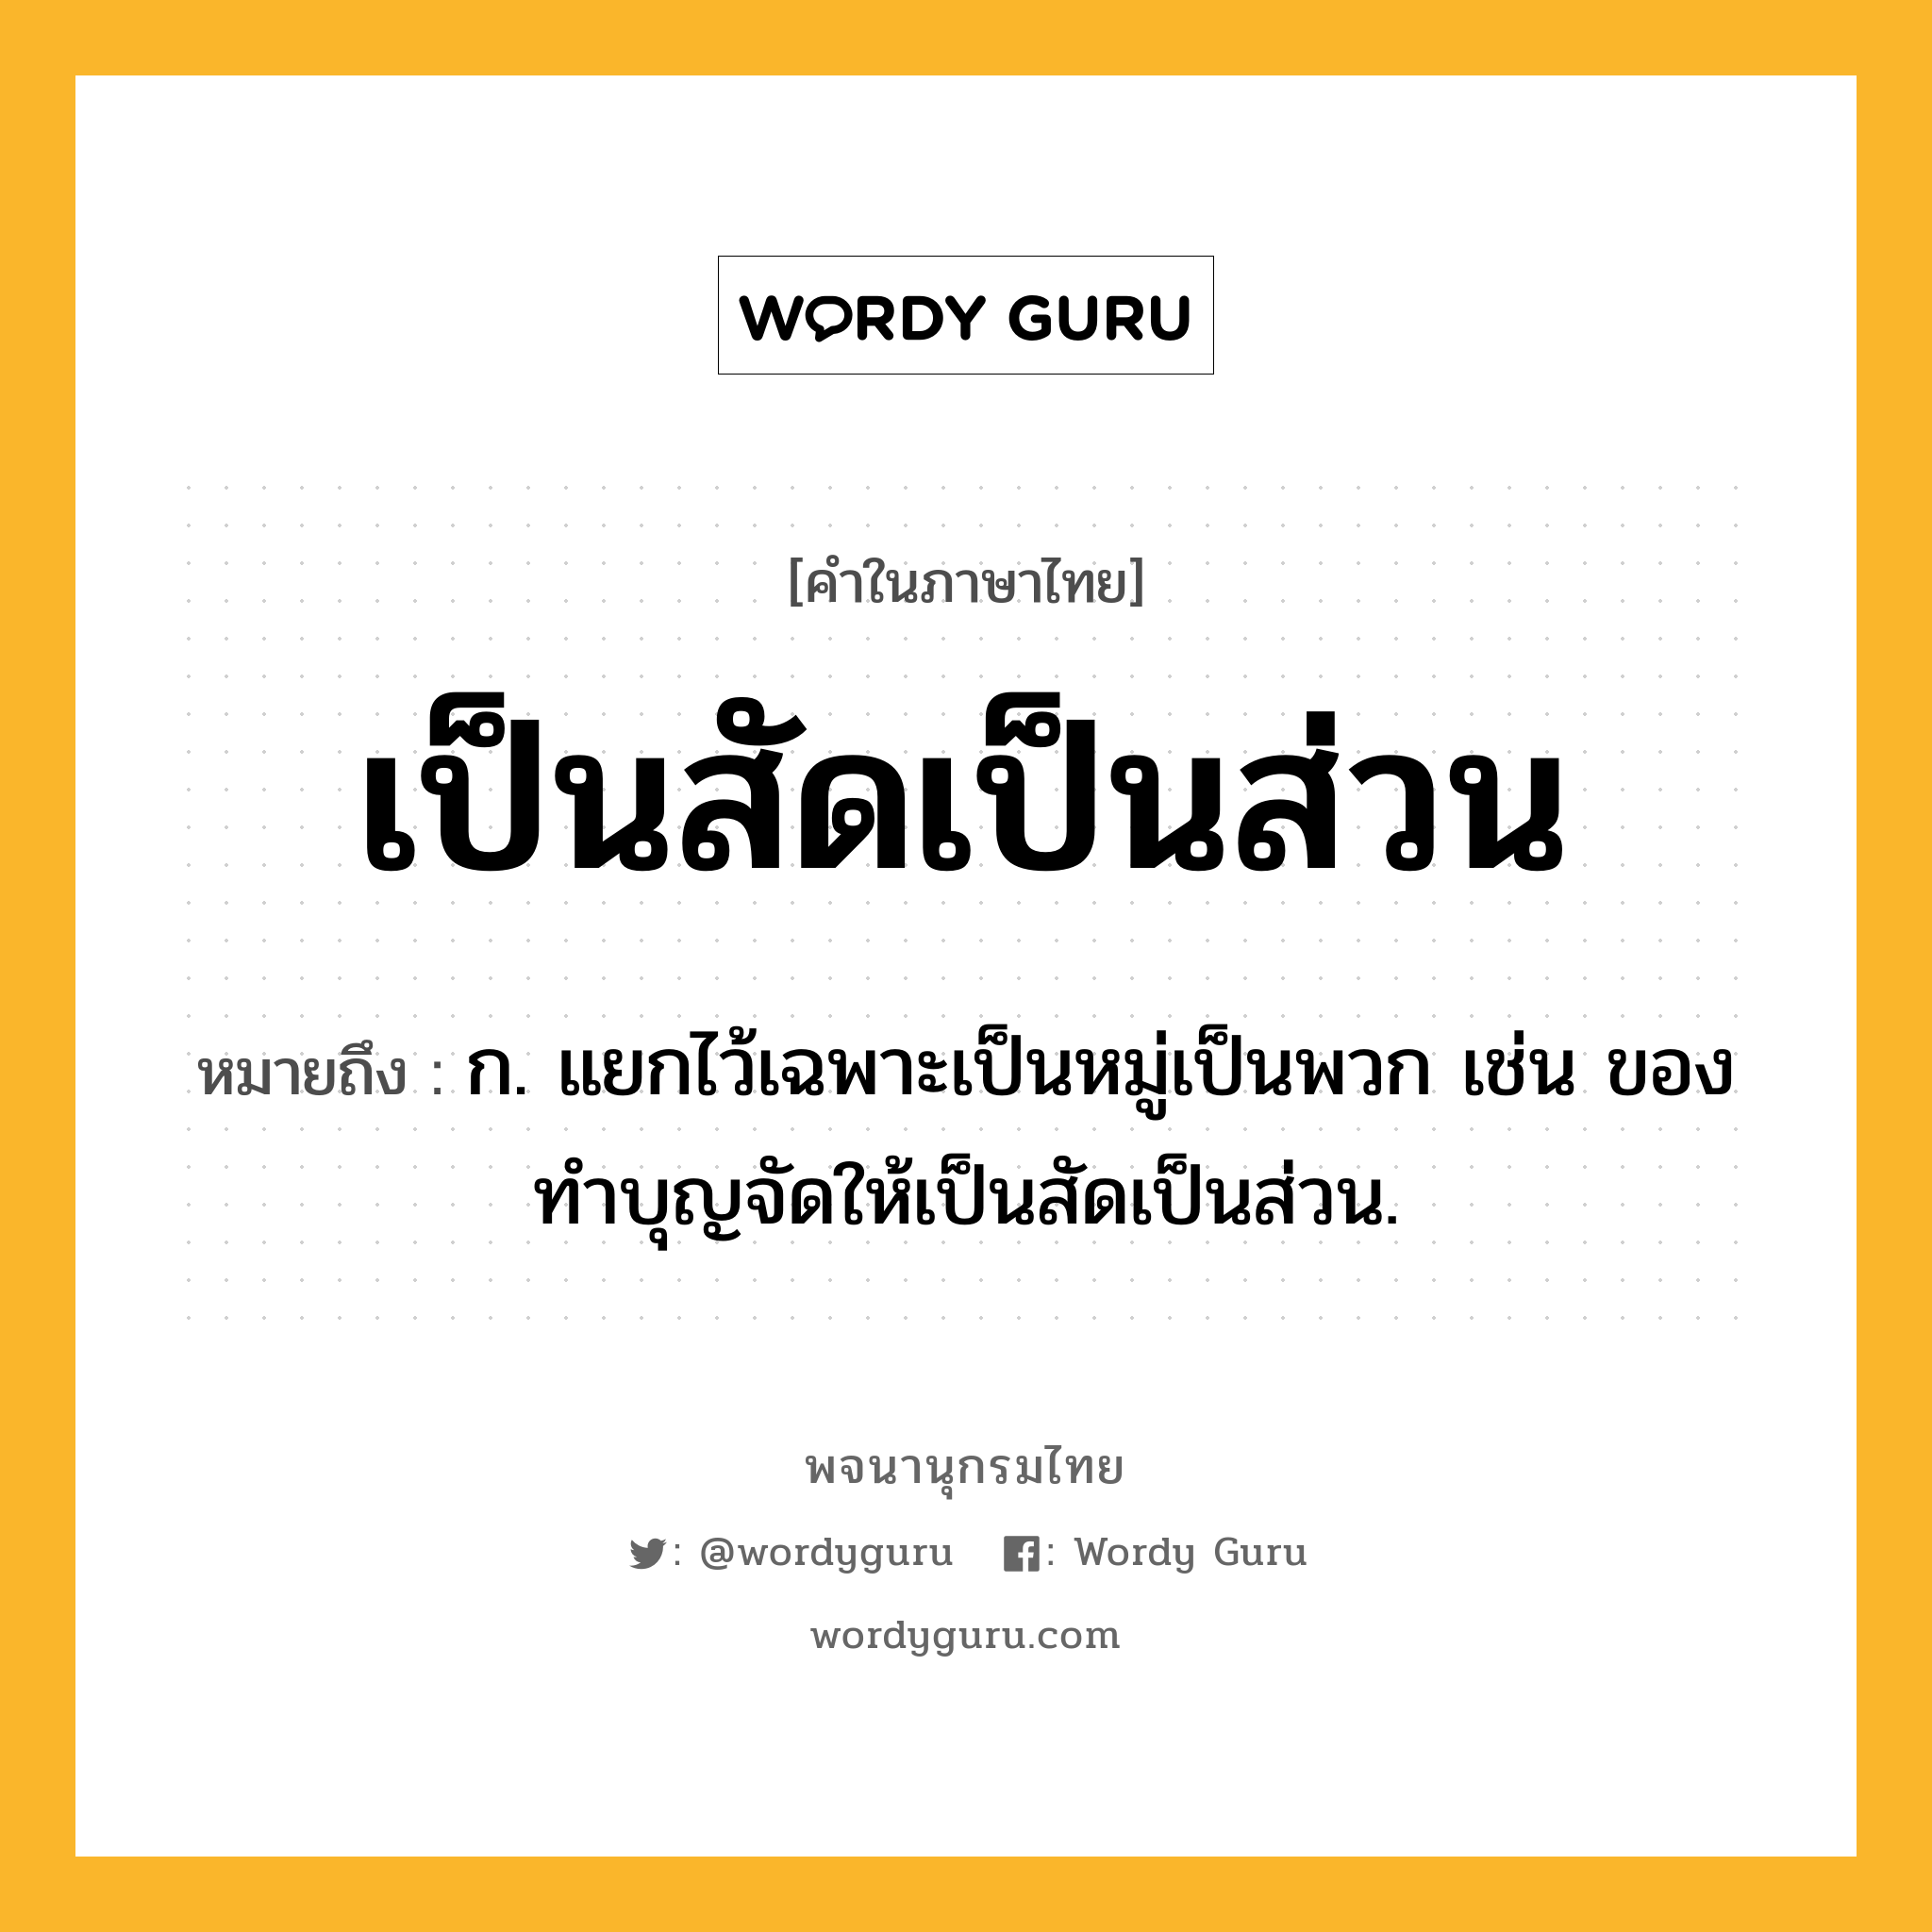 เป็นสัดเป็นส่วน ความหมาย หมายถึงอะไร?, คำในภาษาไทย เป็นสัดเป็นส่วน หมายถึง ก. แยกไว้เฉพาะเป็นหมู่เป็นพวก เช่น ของทำบุญจัดให้เป็นสัดเป็นส่วน.